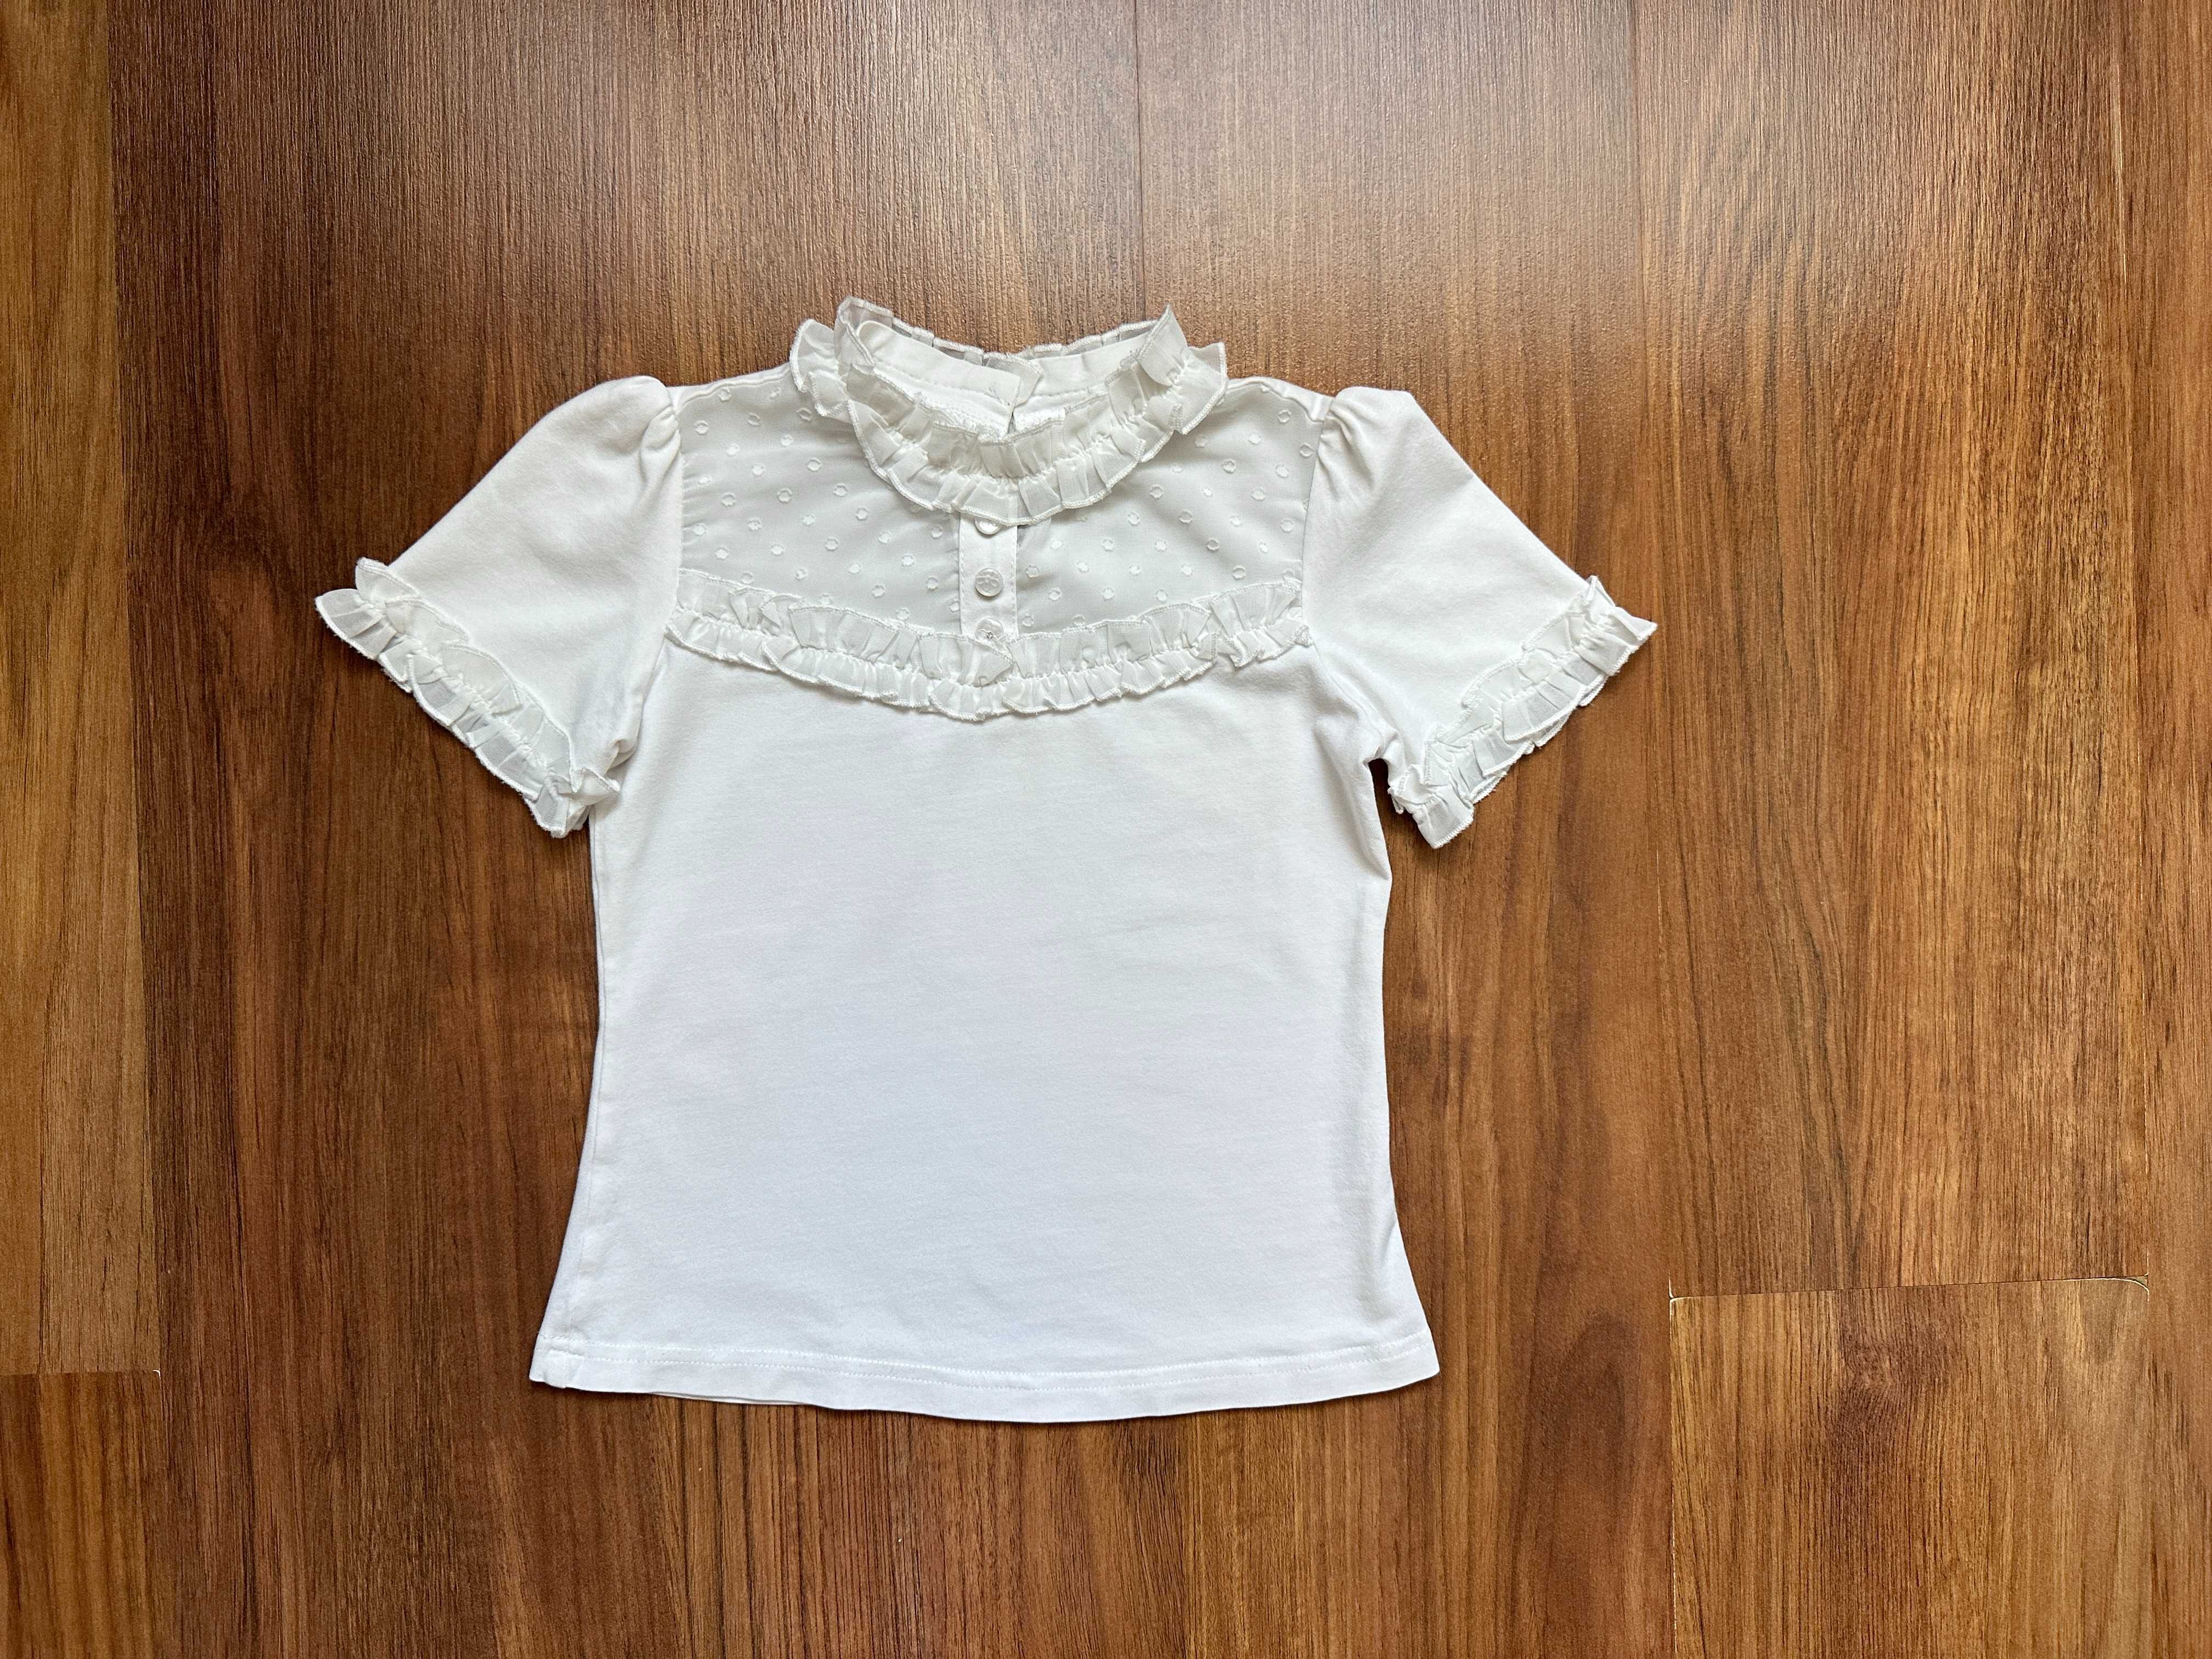 Школьный сарафан на 6-7 лет, на рост 120-125 см, школьная блузка